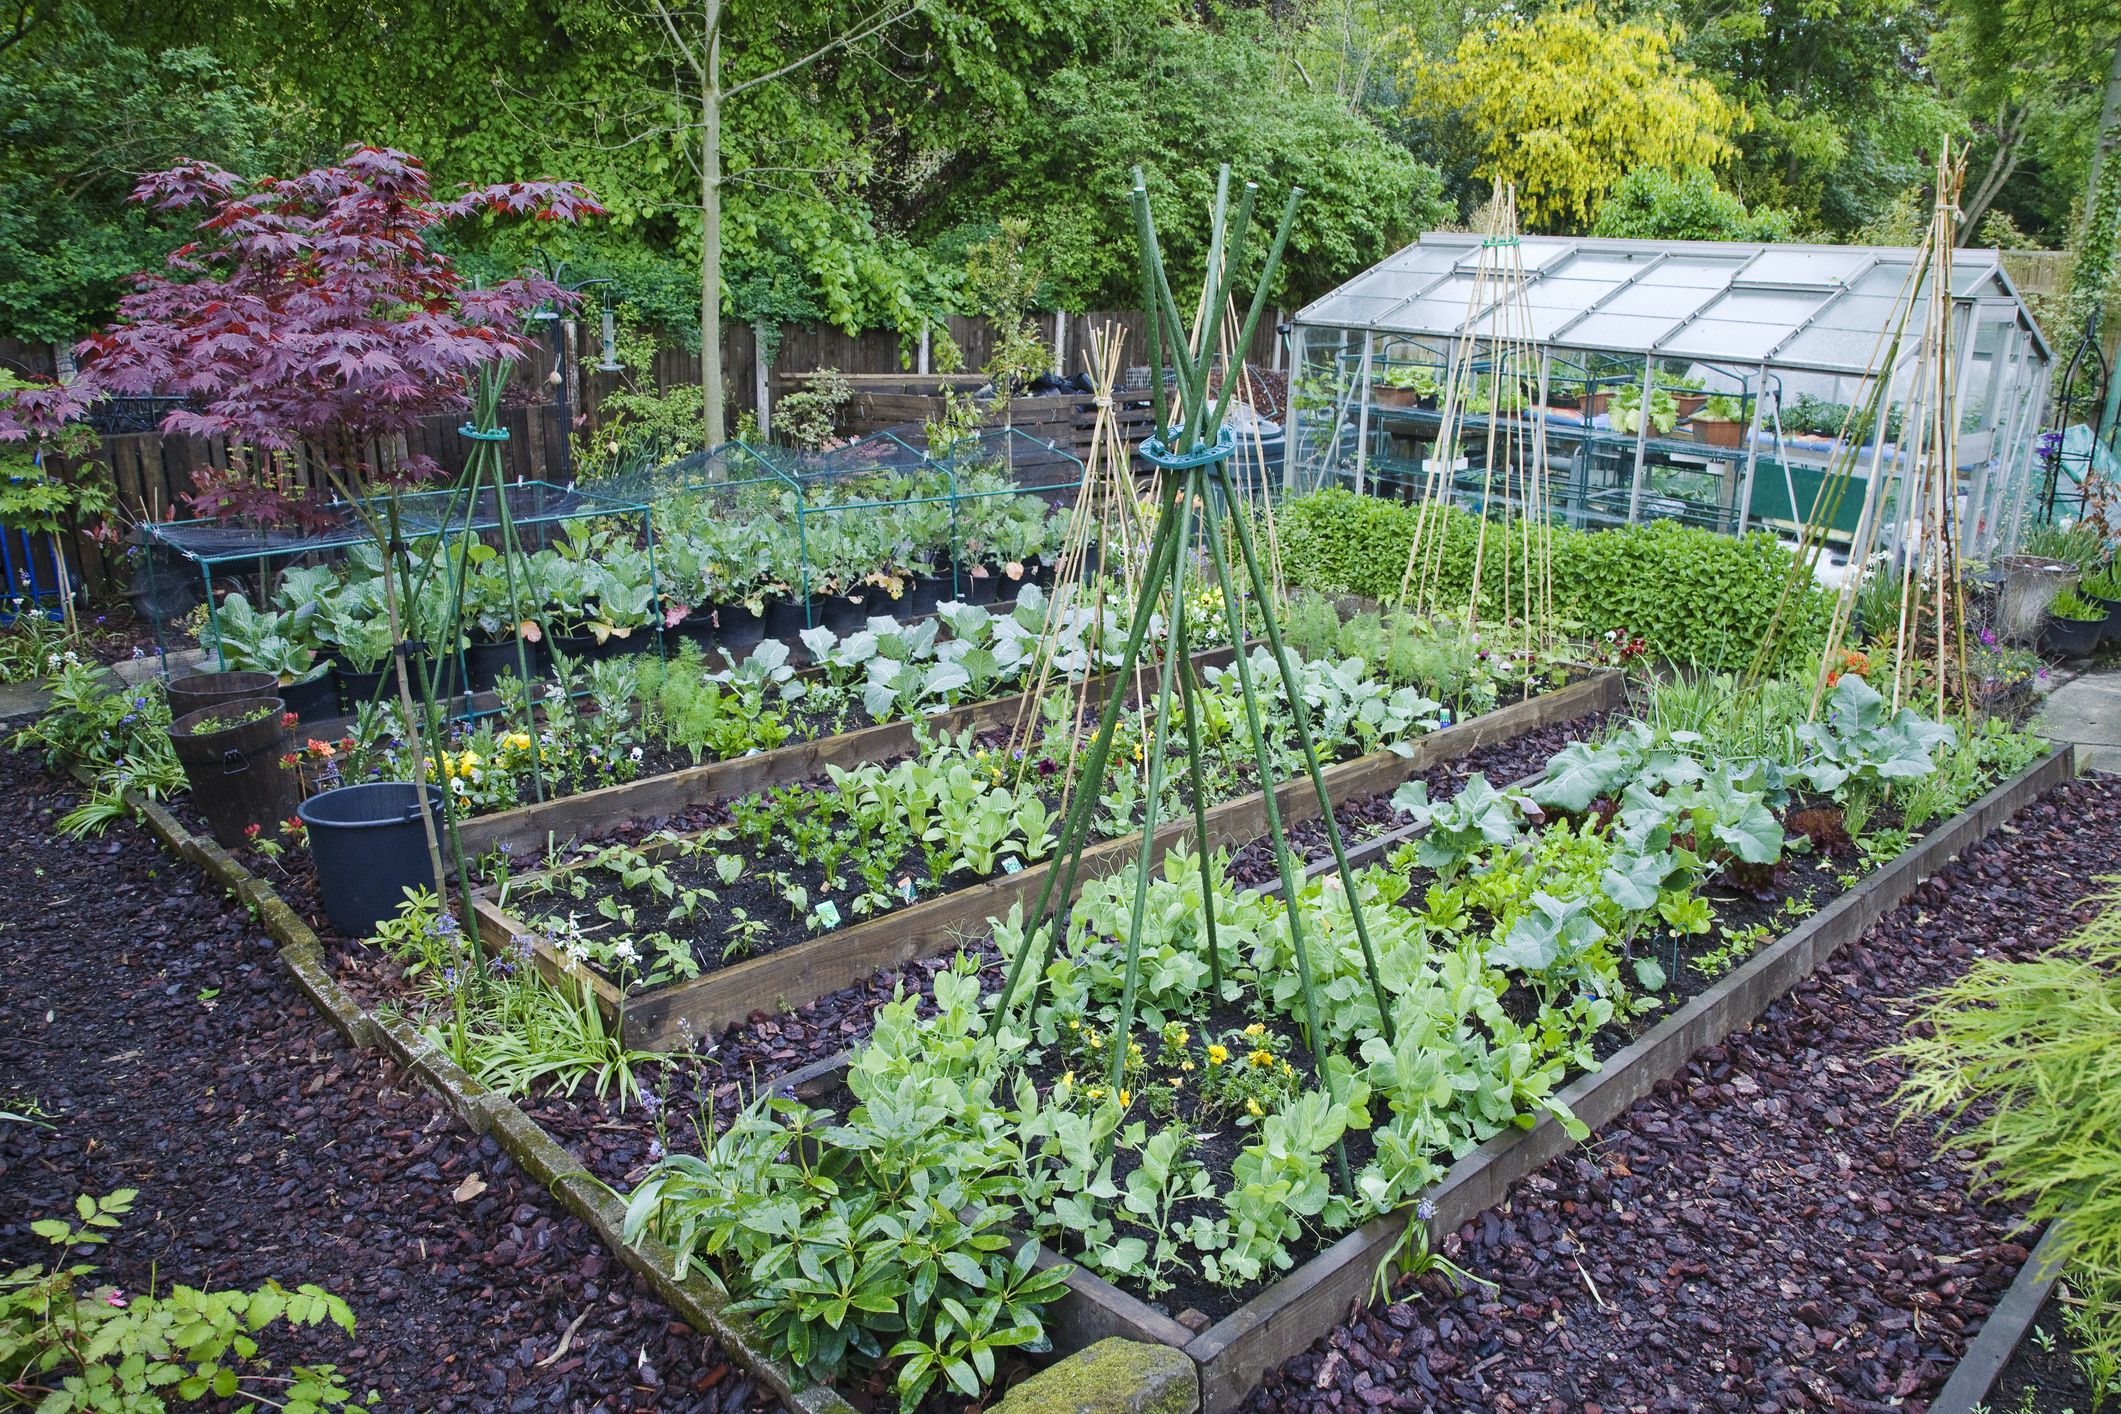 Image of Vegetable garden in garden